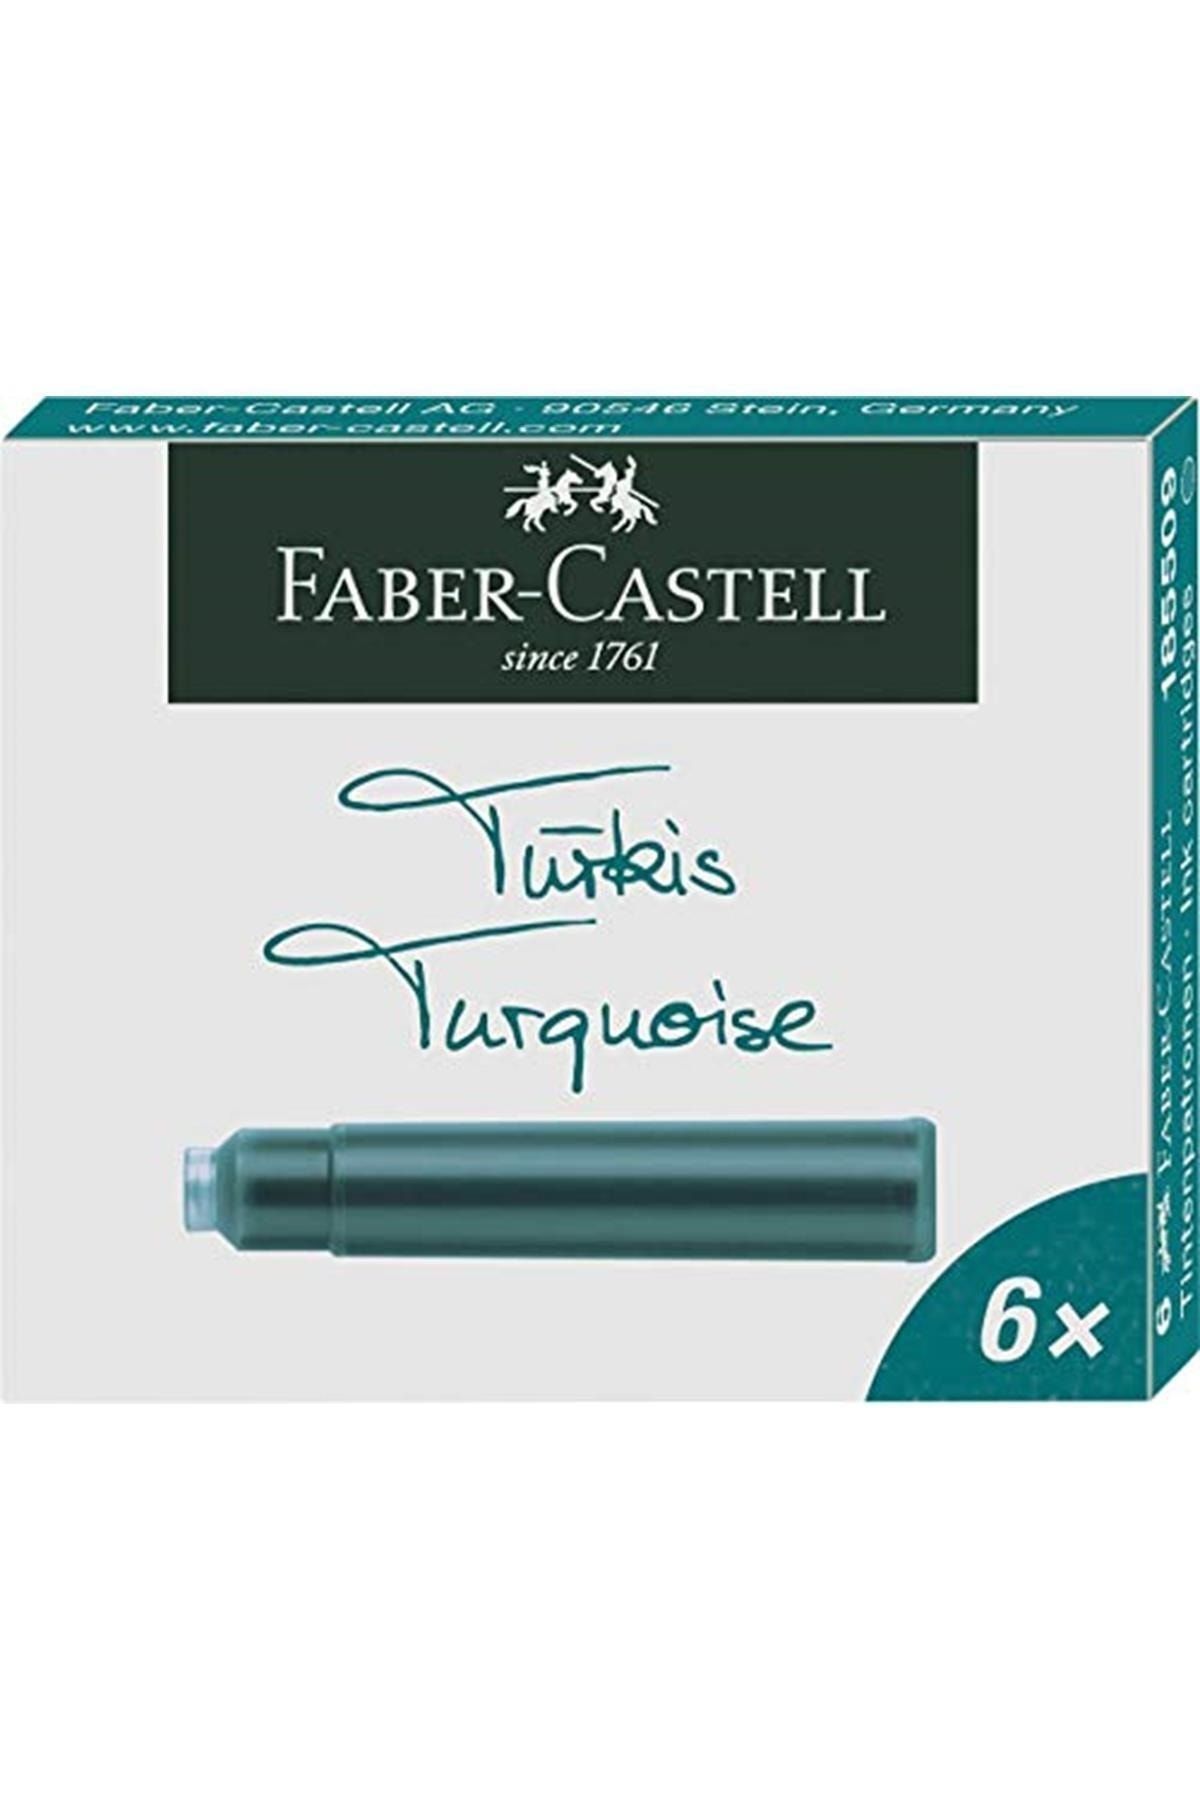 Faber Castell Faber-castell 5050185509 Faber-castell Dk Kartuş, Turkuaz 6'lı